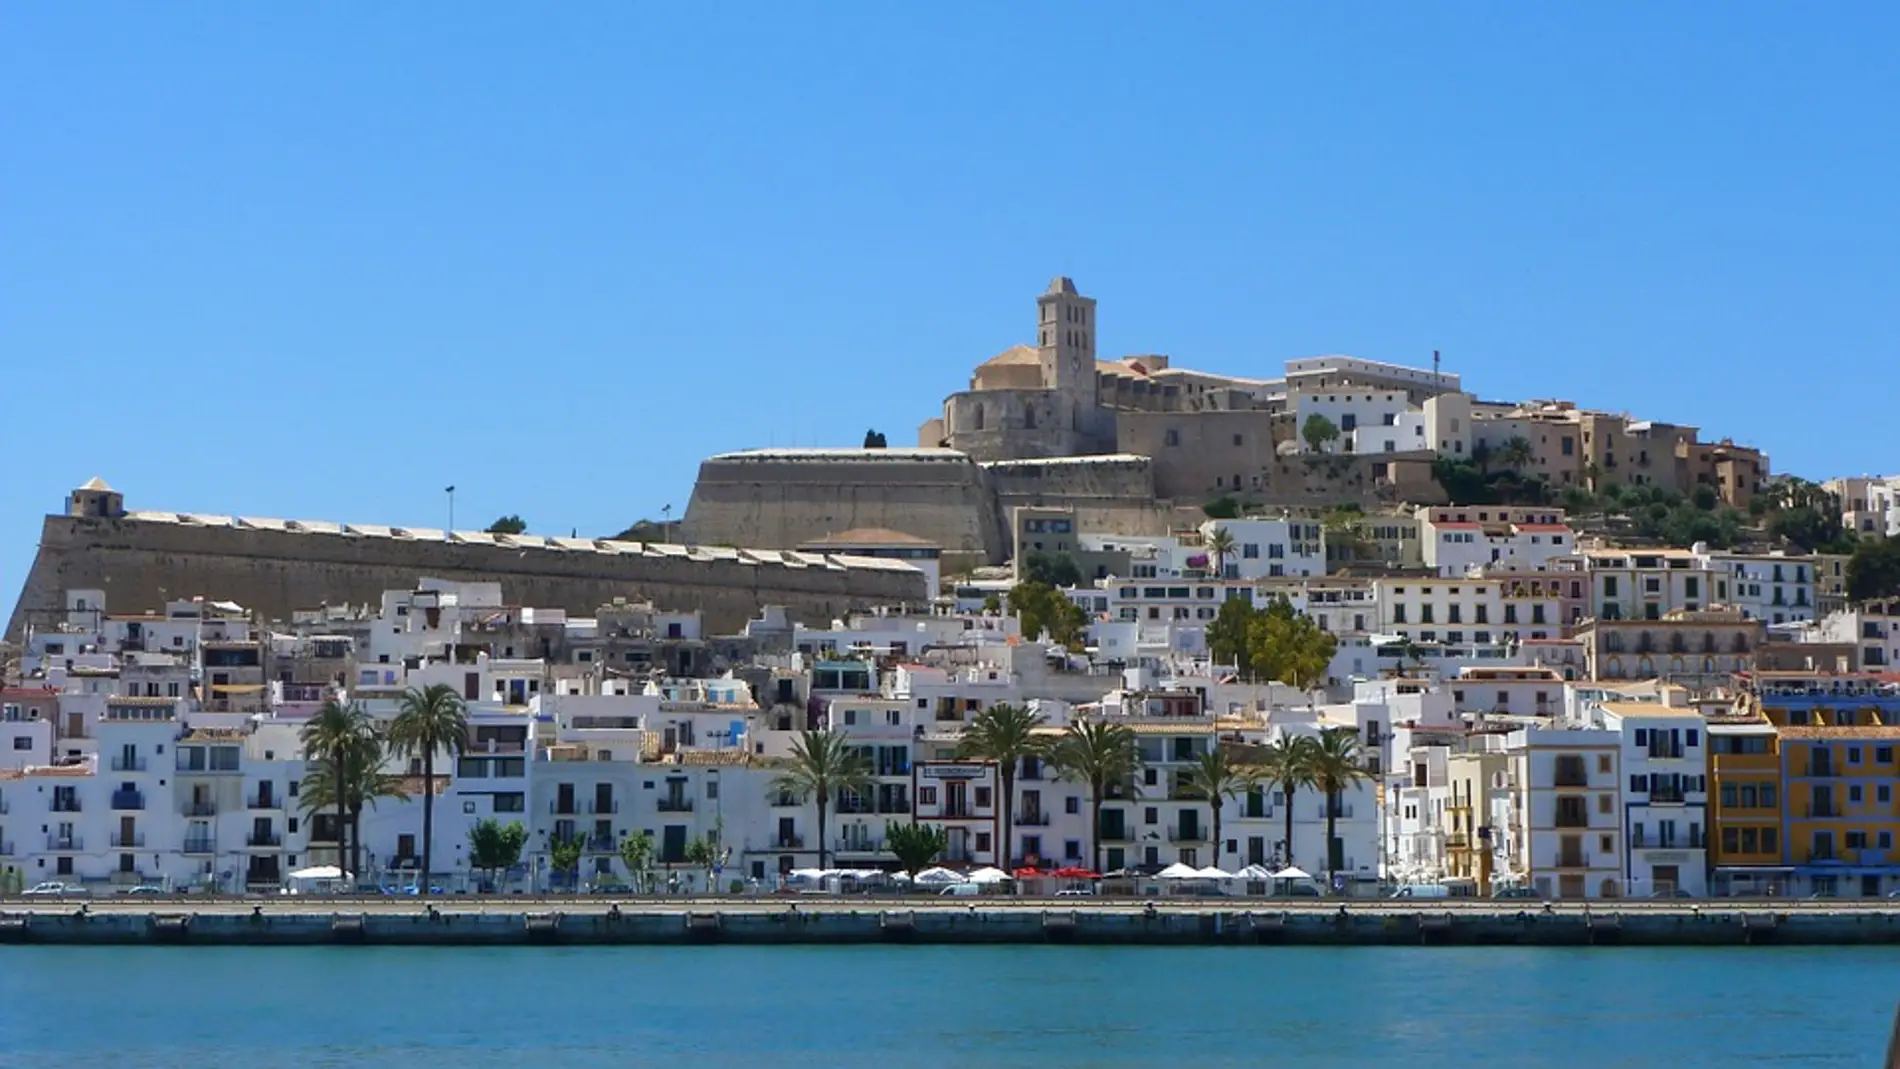 La antigua ciudad amurallada de Ibiza, Dalt Vila, declarada Patrimonio de la Humanidad por la UNESCO